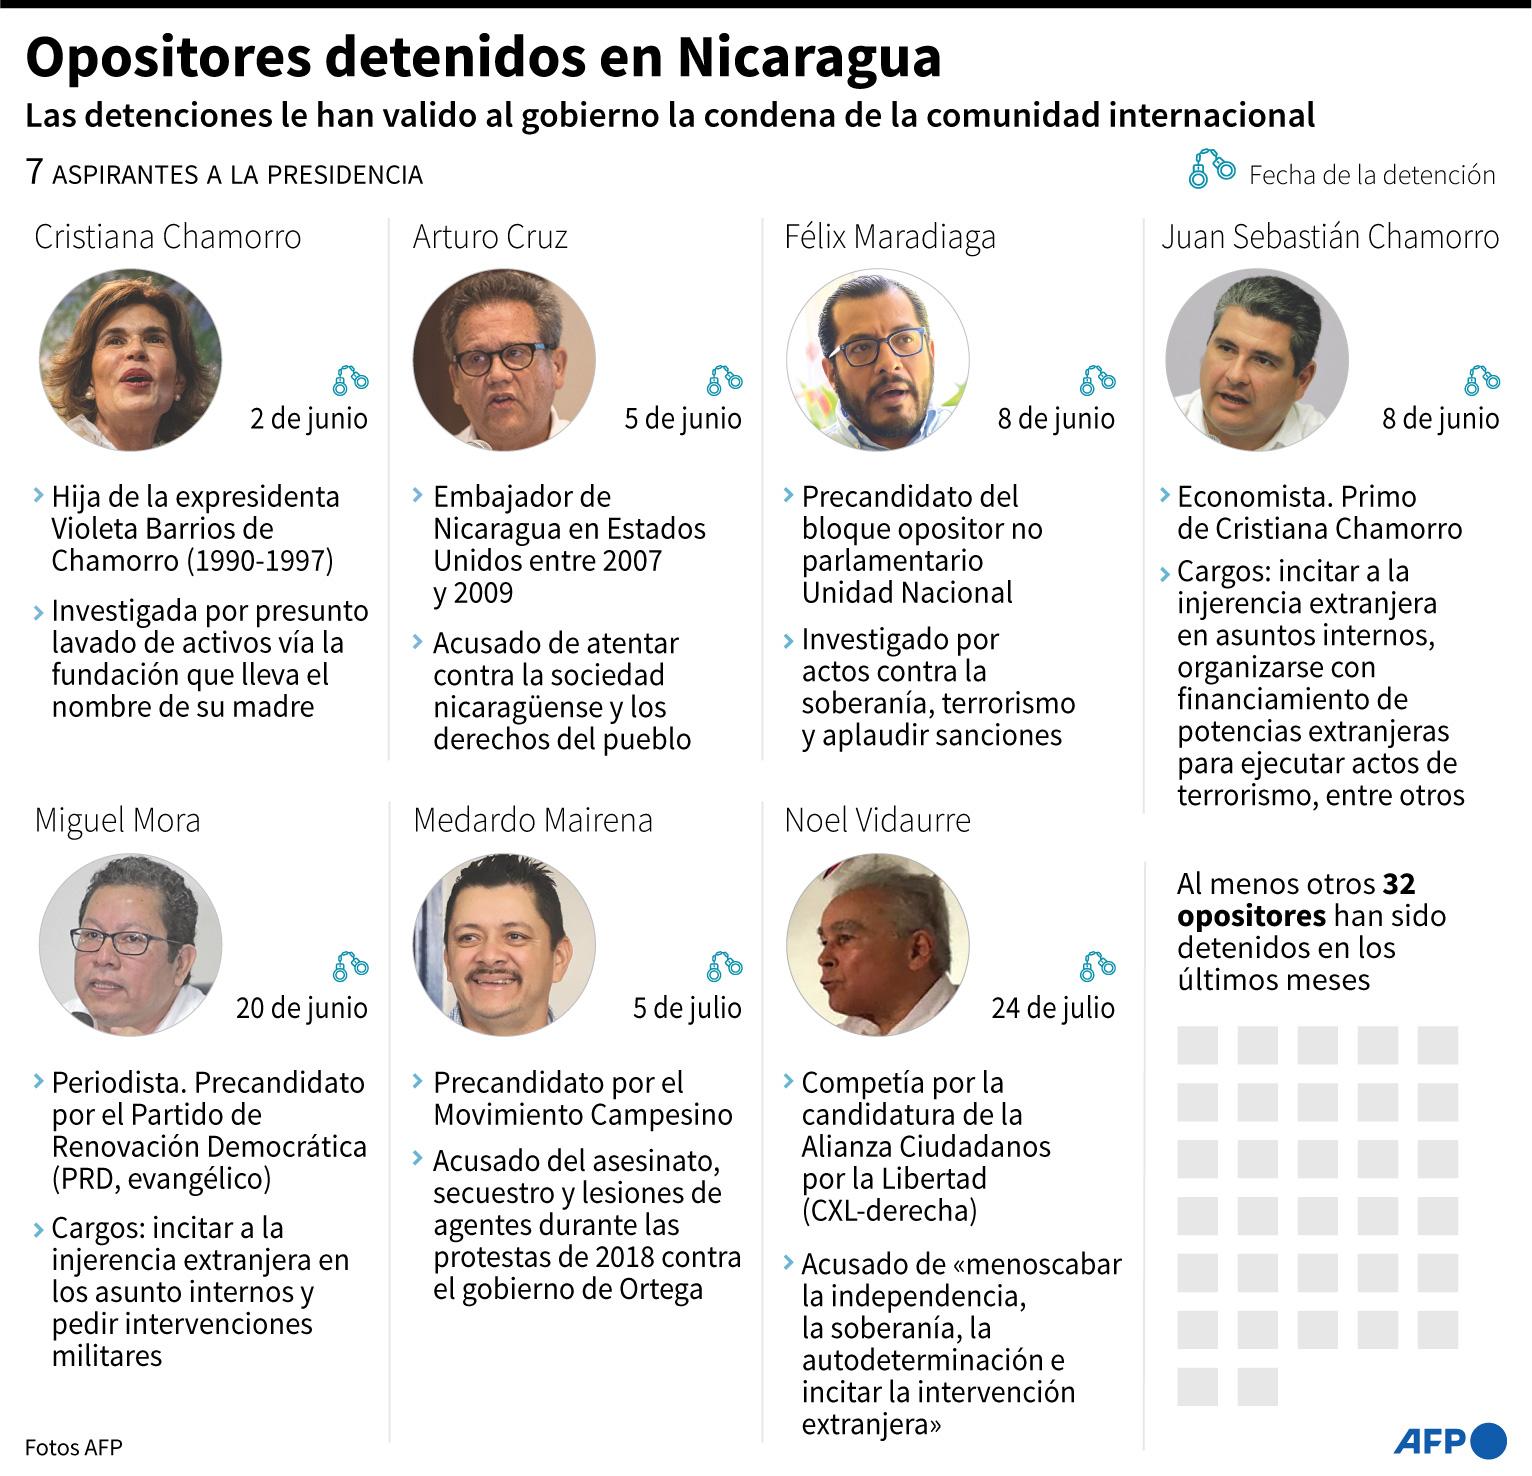 Ficha sobre los 7 aspirantes a la presidencia detenidos en Nicaragua entre junio y julio de 2021 - AFP / AFP